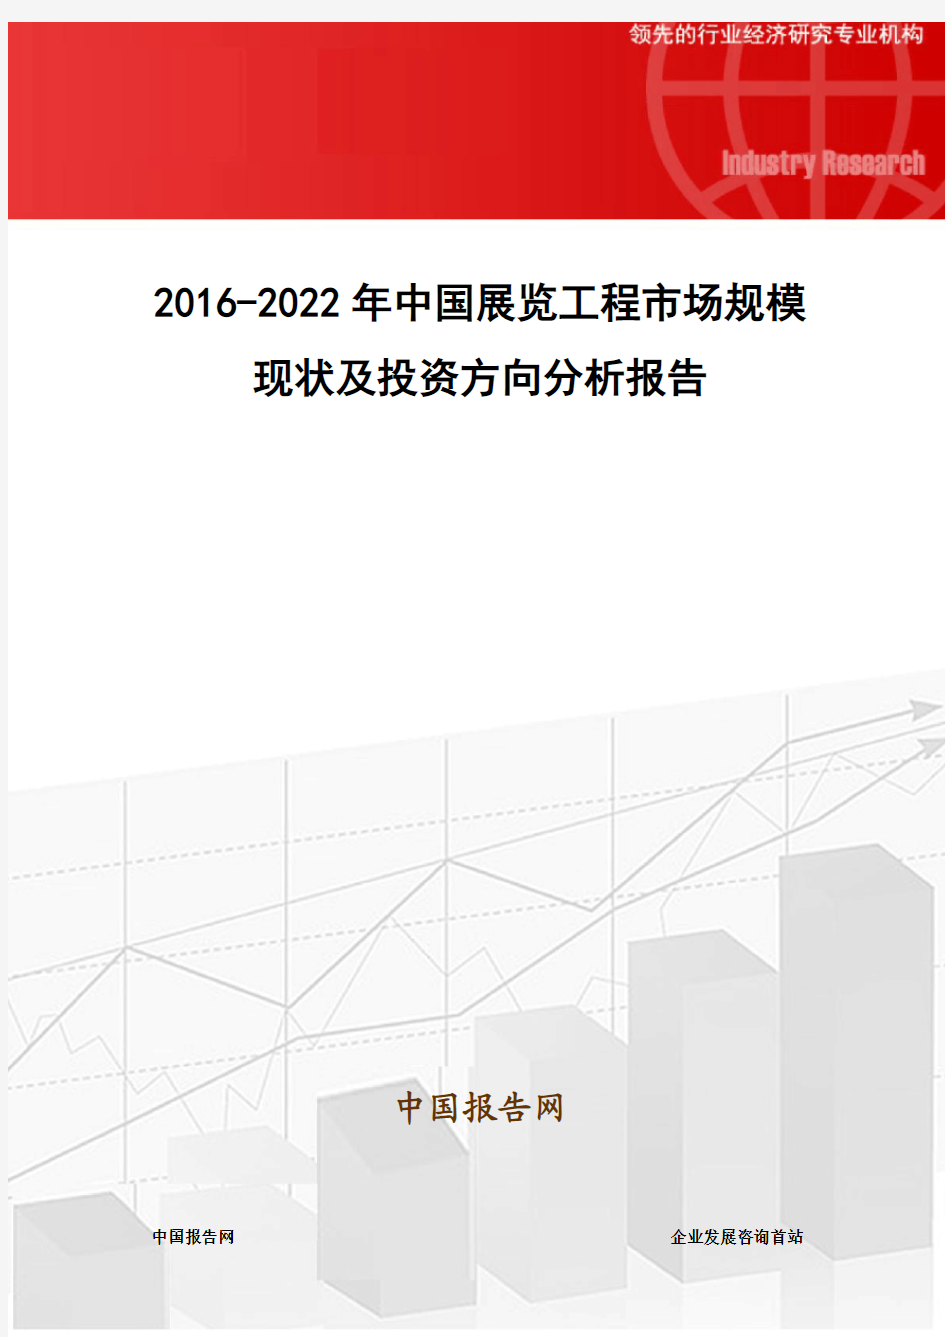 2016-2022年中国展览工程市场规模现状及投资方向分析报告